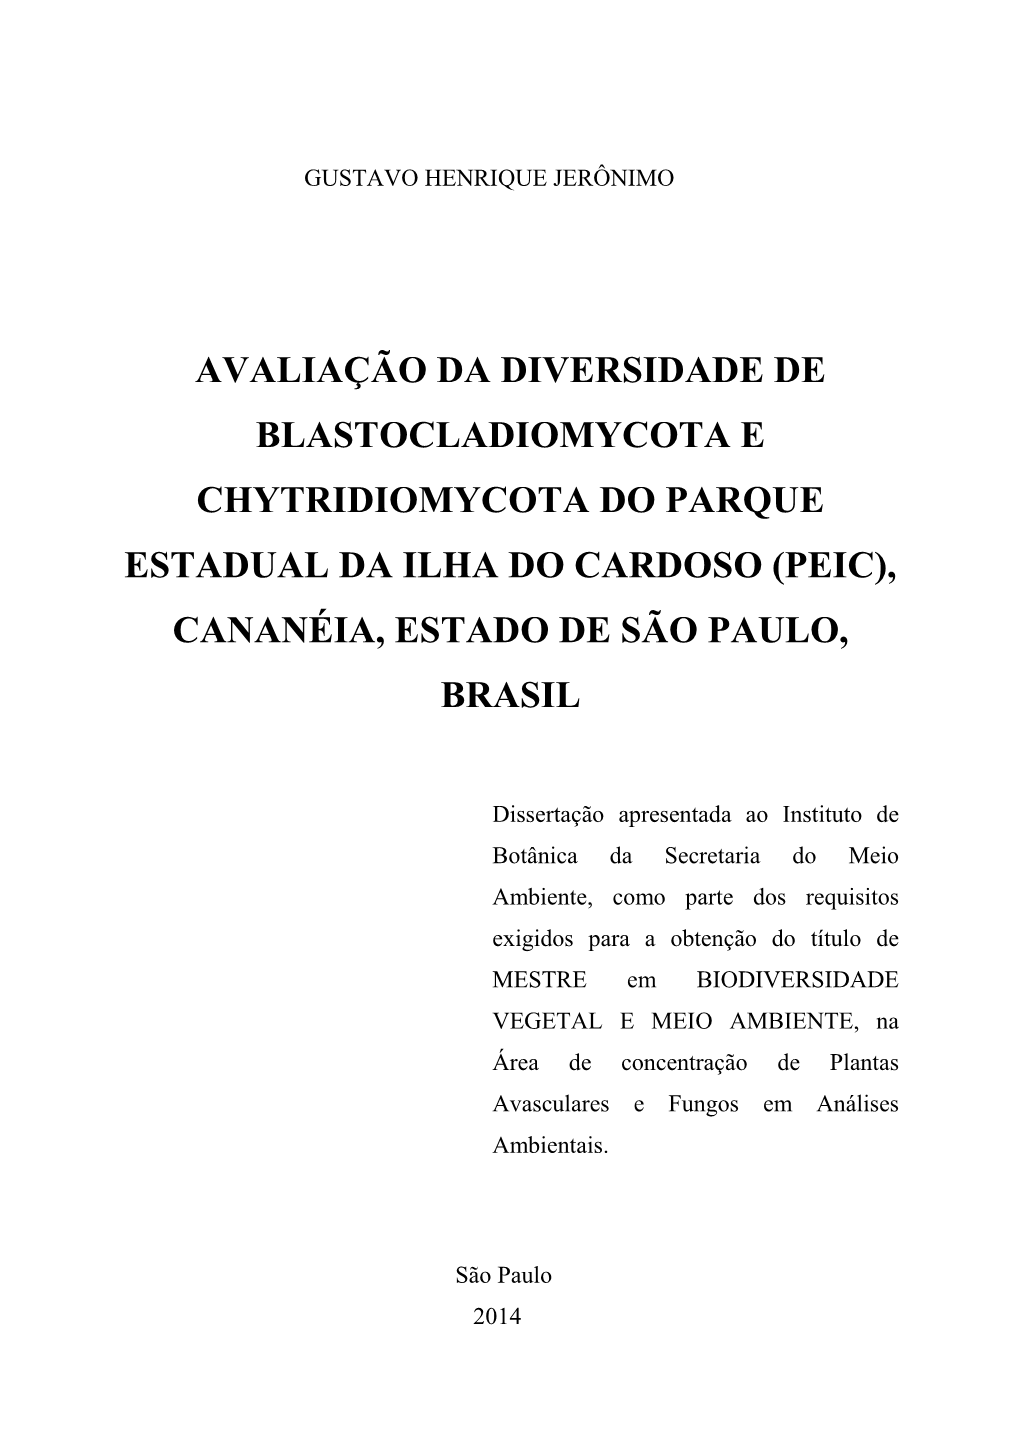 Avaliação Da Diversidade De Blastocladiomycota E Chytridiomycota Do Parque Estadual Da Ilha Do Cardoso (Peic), Cananéia, Estado De São Paulo, Brasil